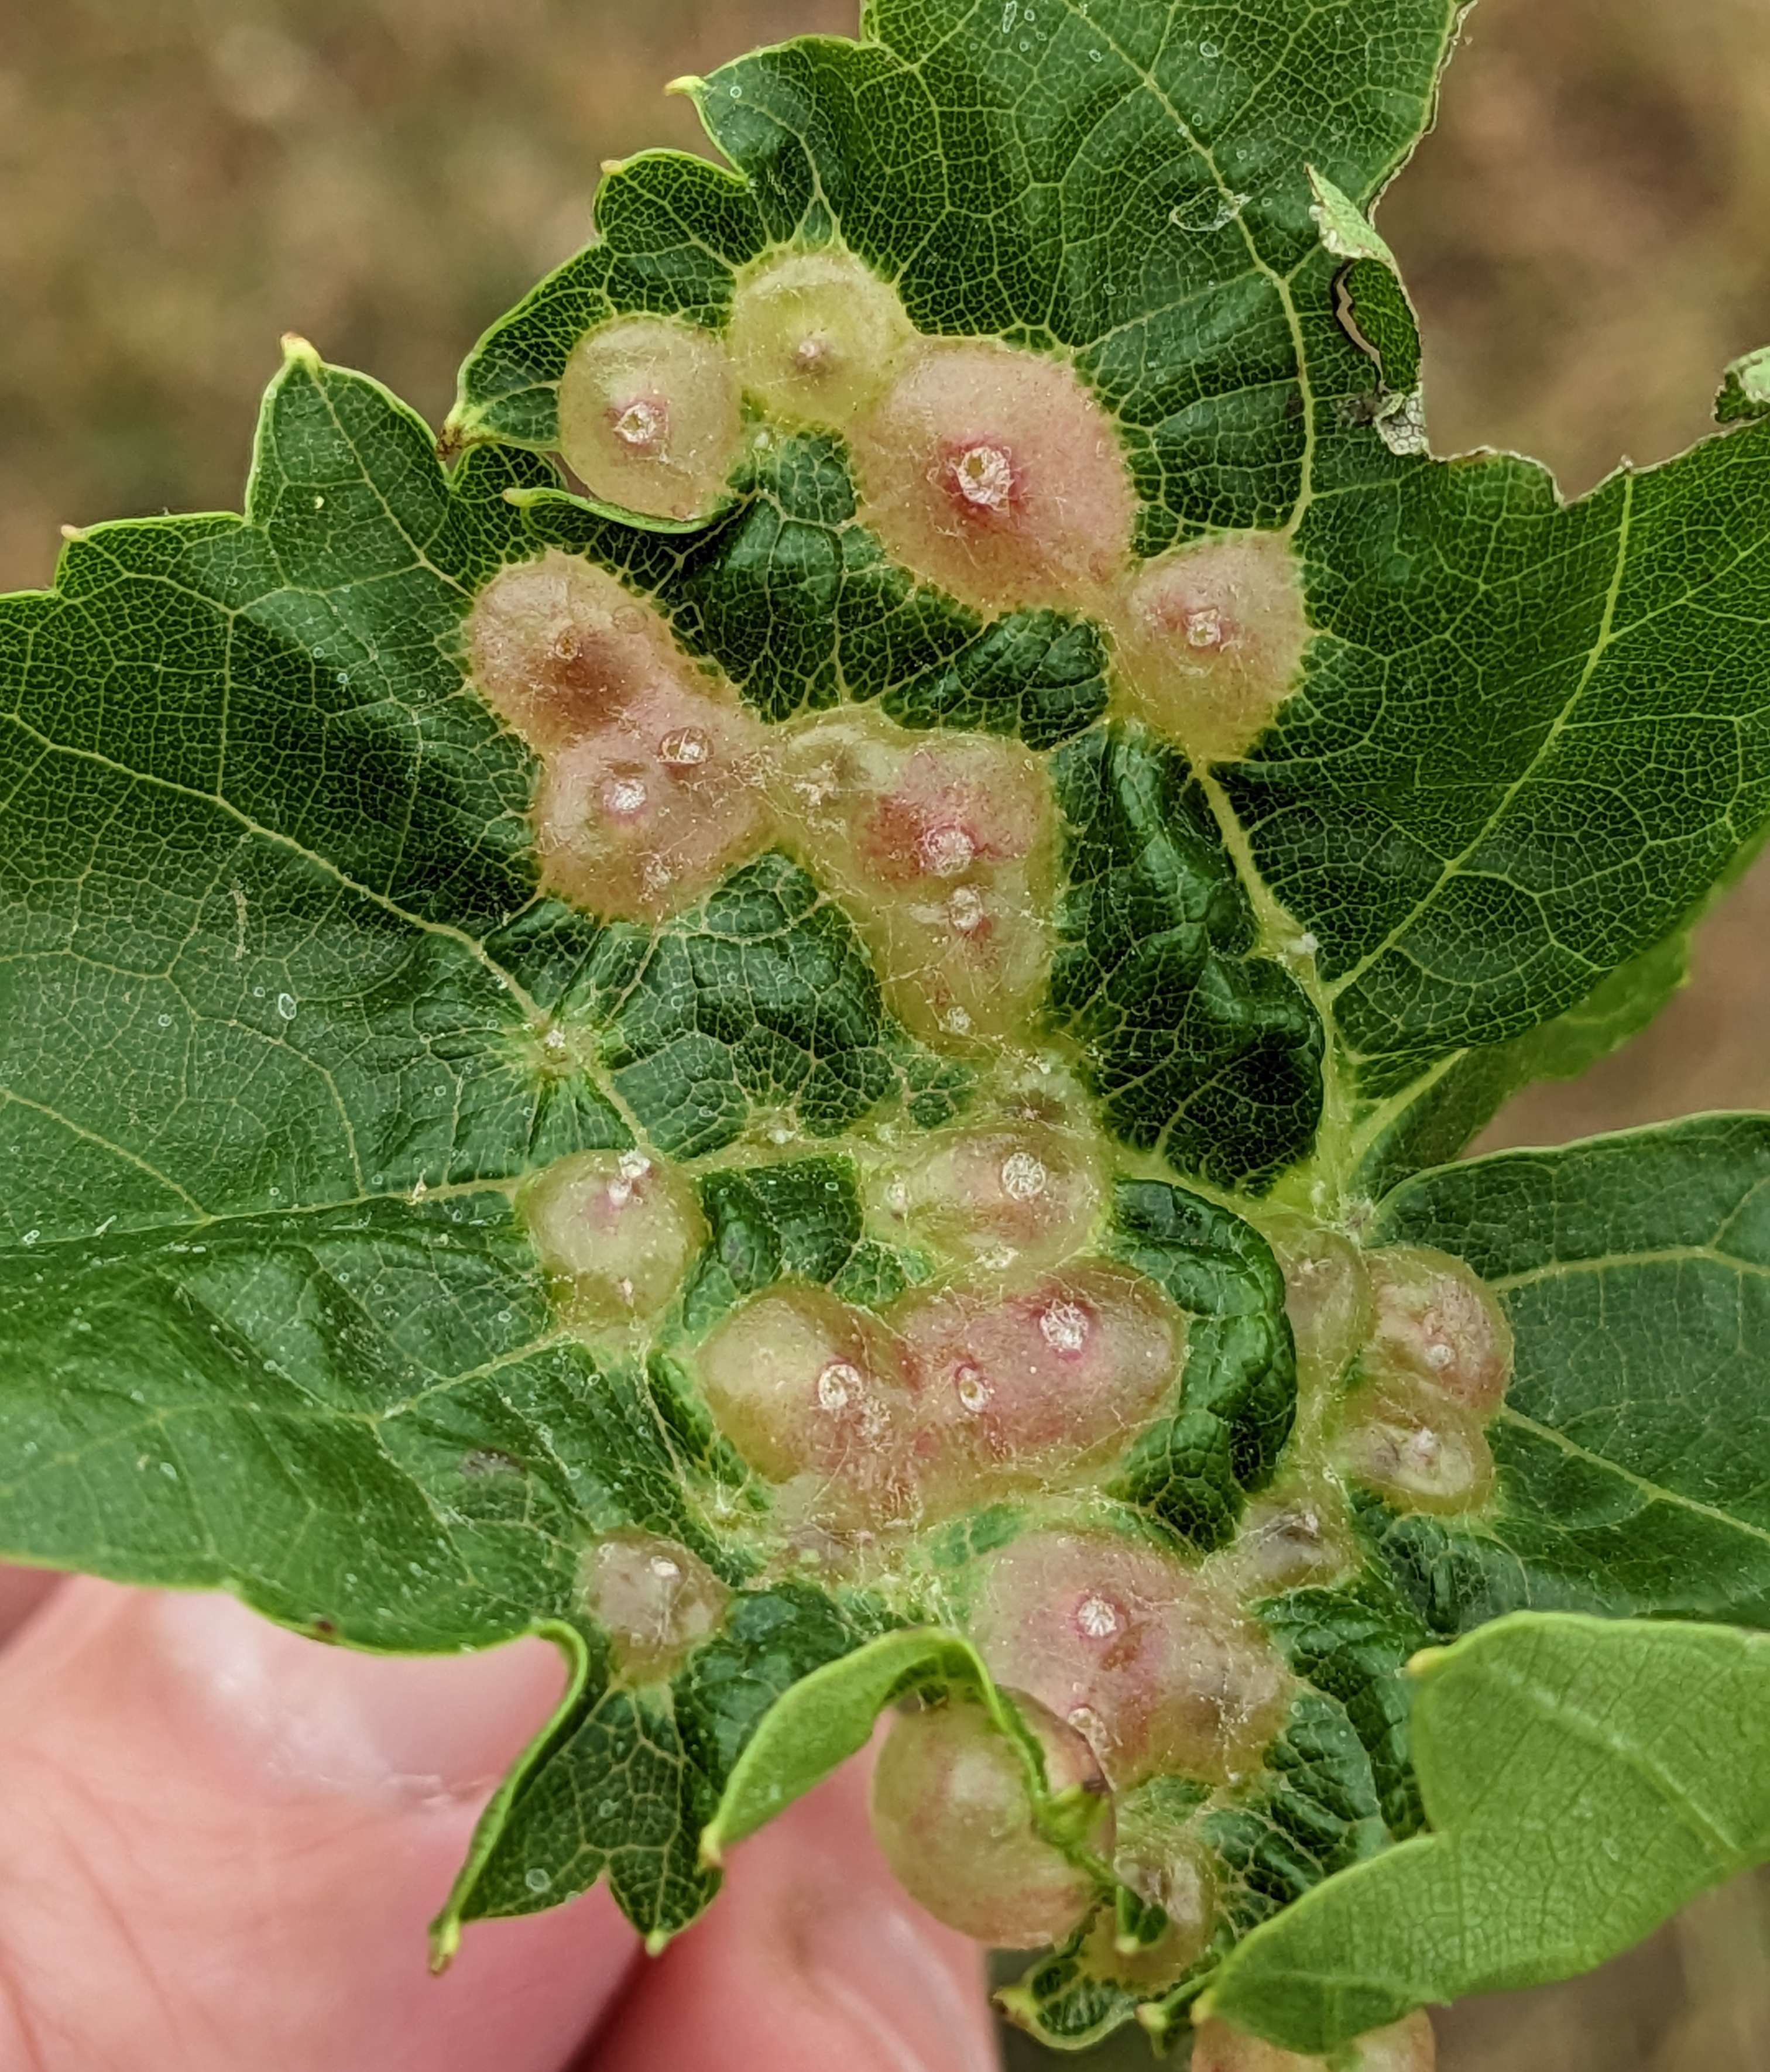 Grape tumid gallmaker infestation on leaf.